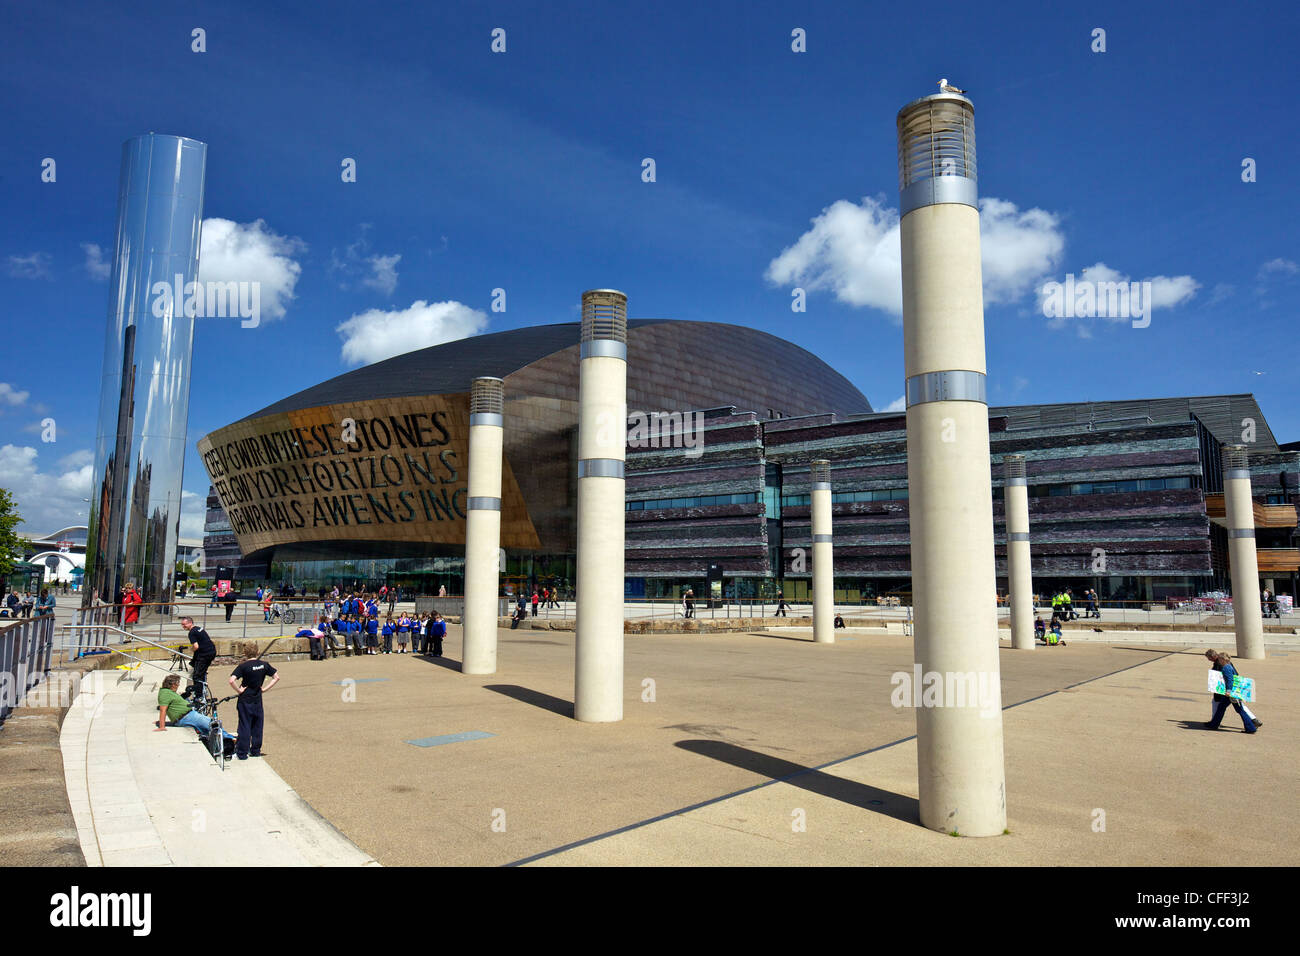 Wales Millennium Centre, Place Bute, la baie de Cardiff, Cardiff, South Glamorgan, Pays de Galles, Royaume-Uni, Europe Banque D'Images